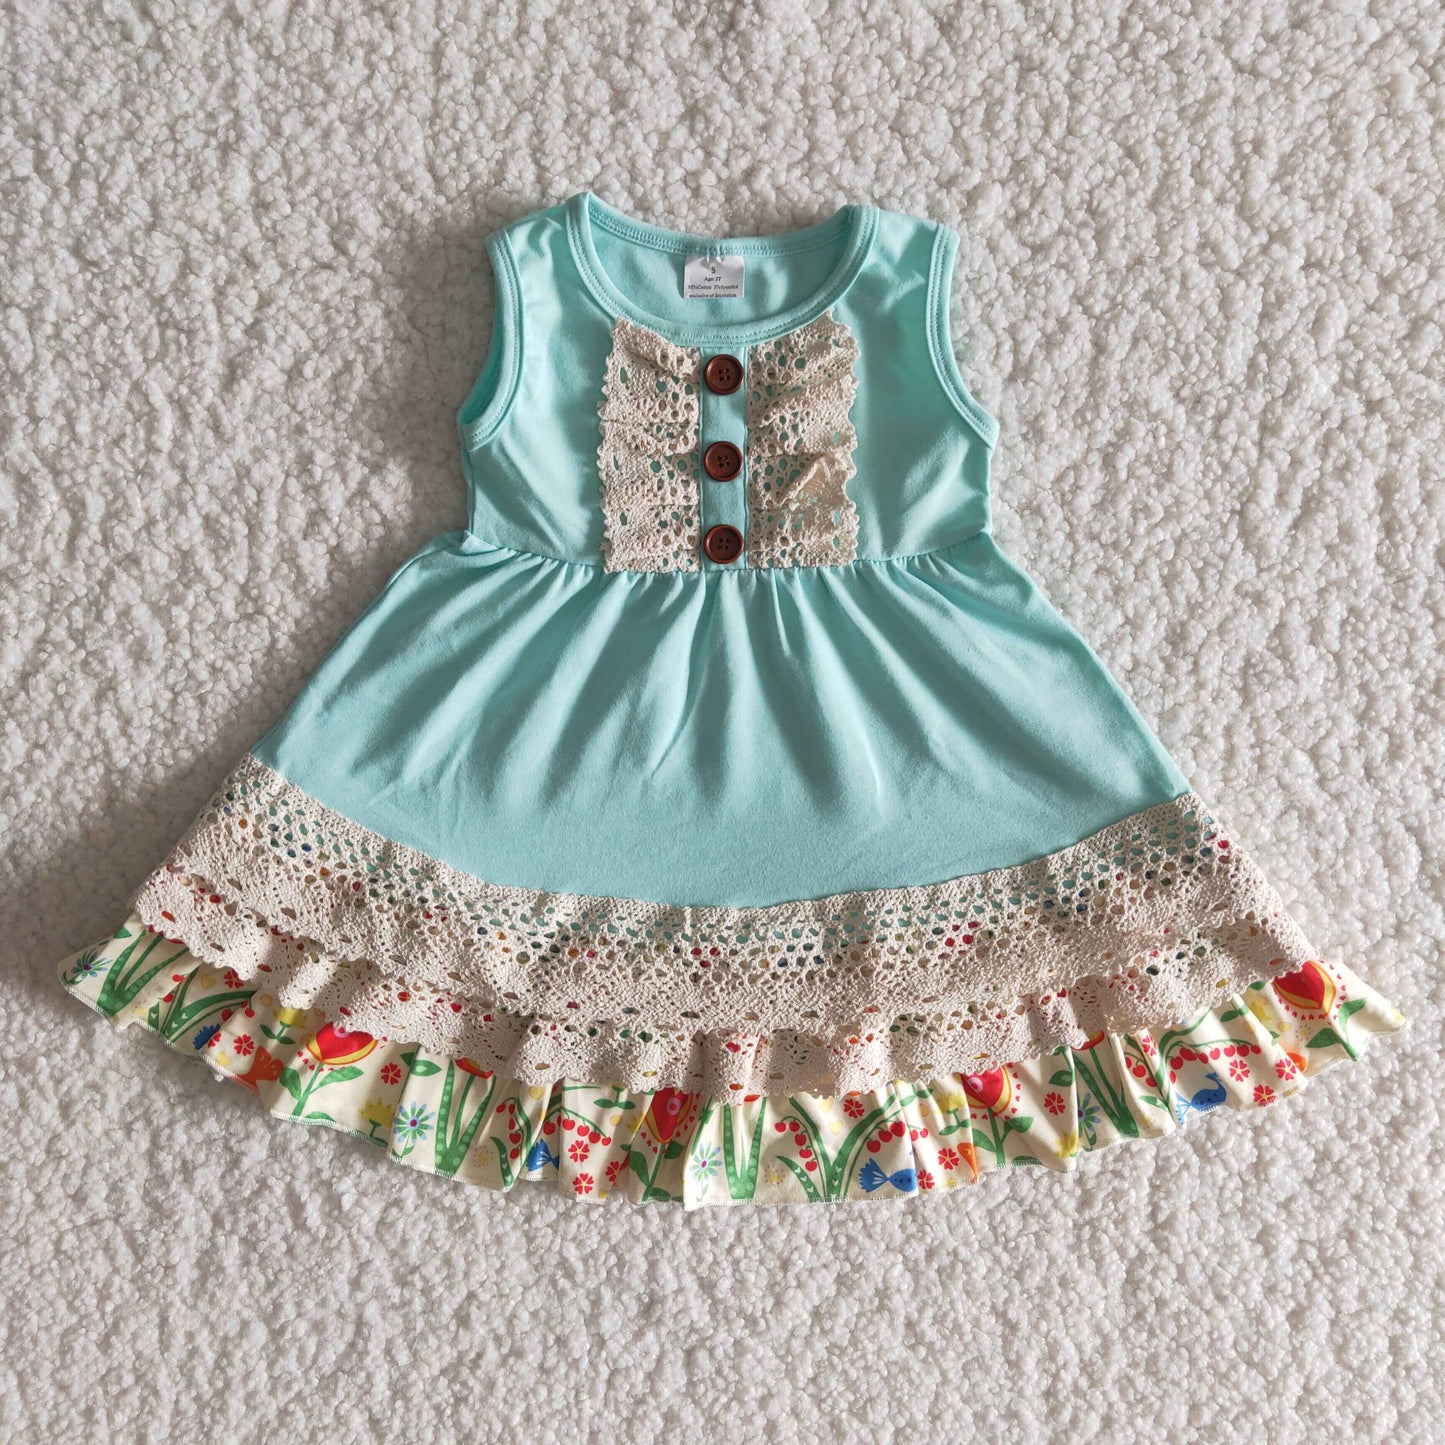 Baby girls lace dress